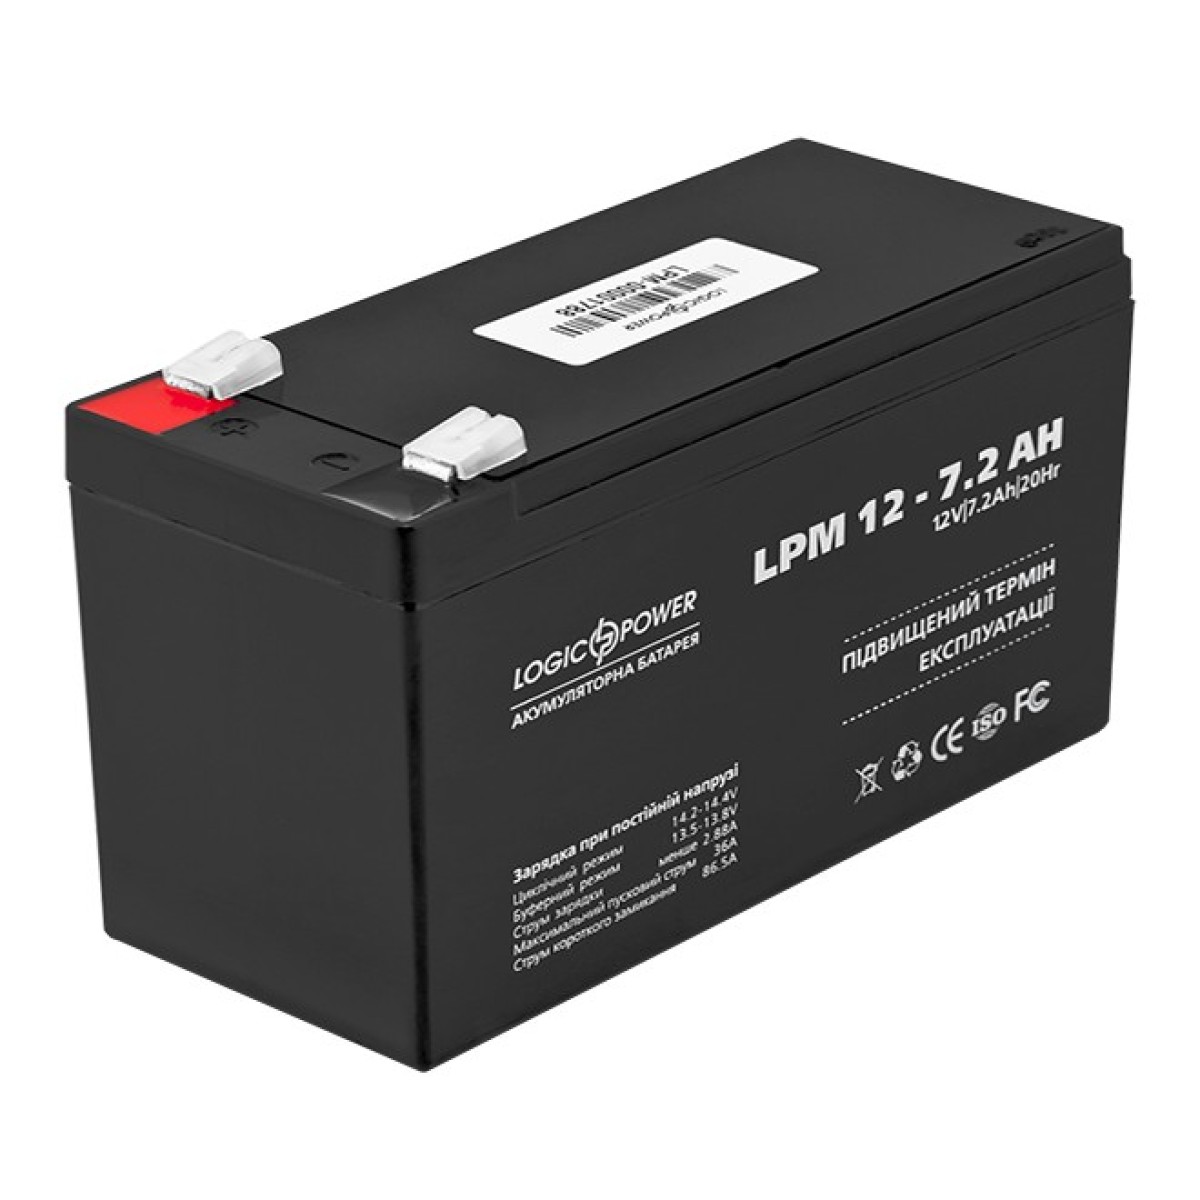 Аккумулятор свинцово-кислотный LogicPower AGM LPM 12 – 7,2 AH 98_98.jpg - фото 1